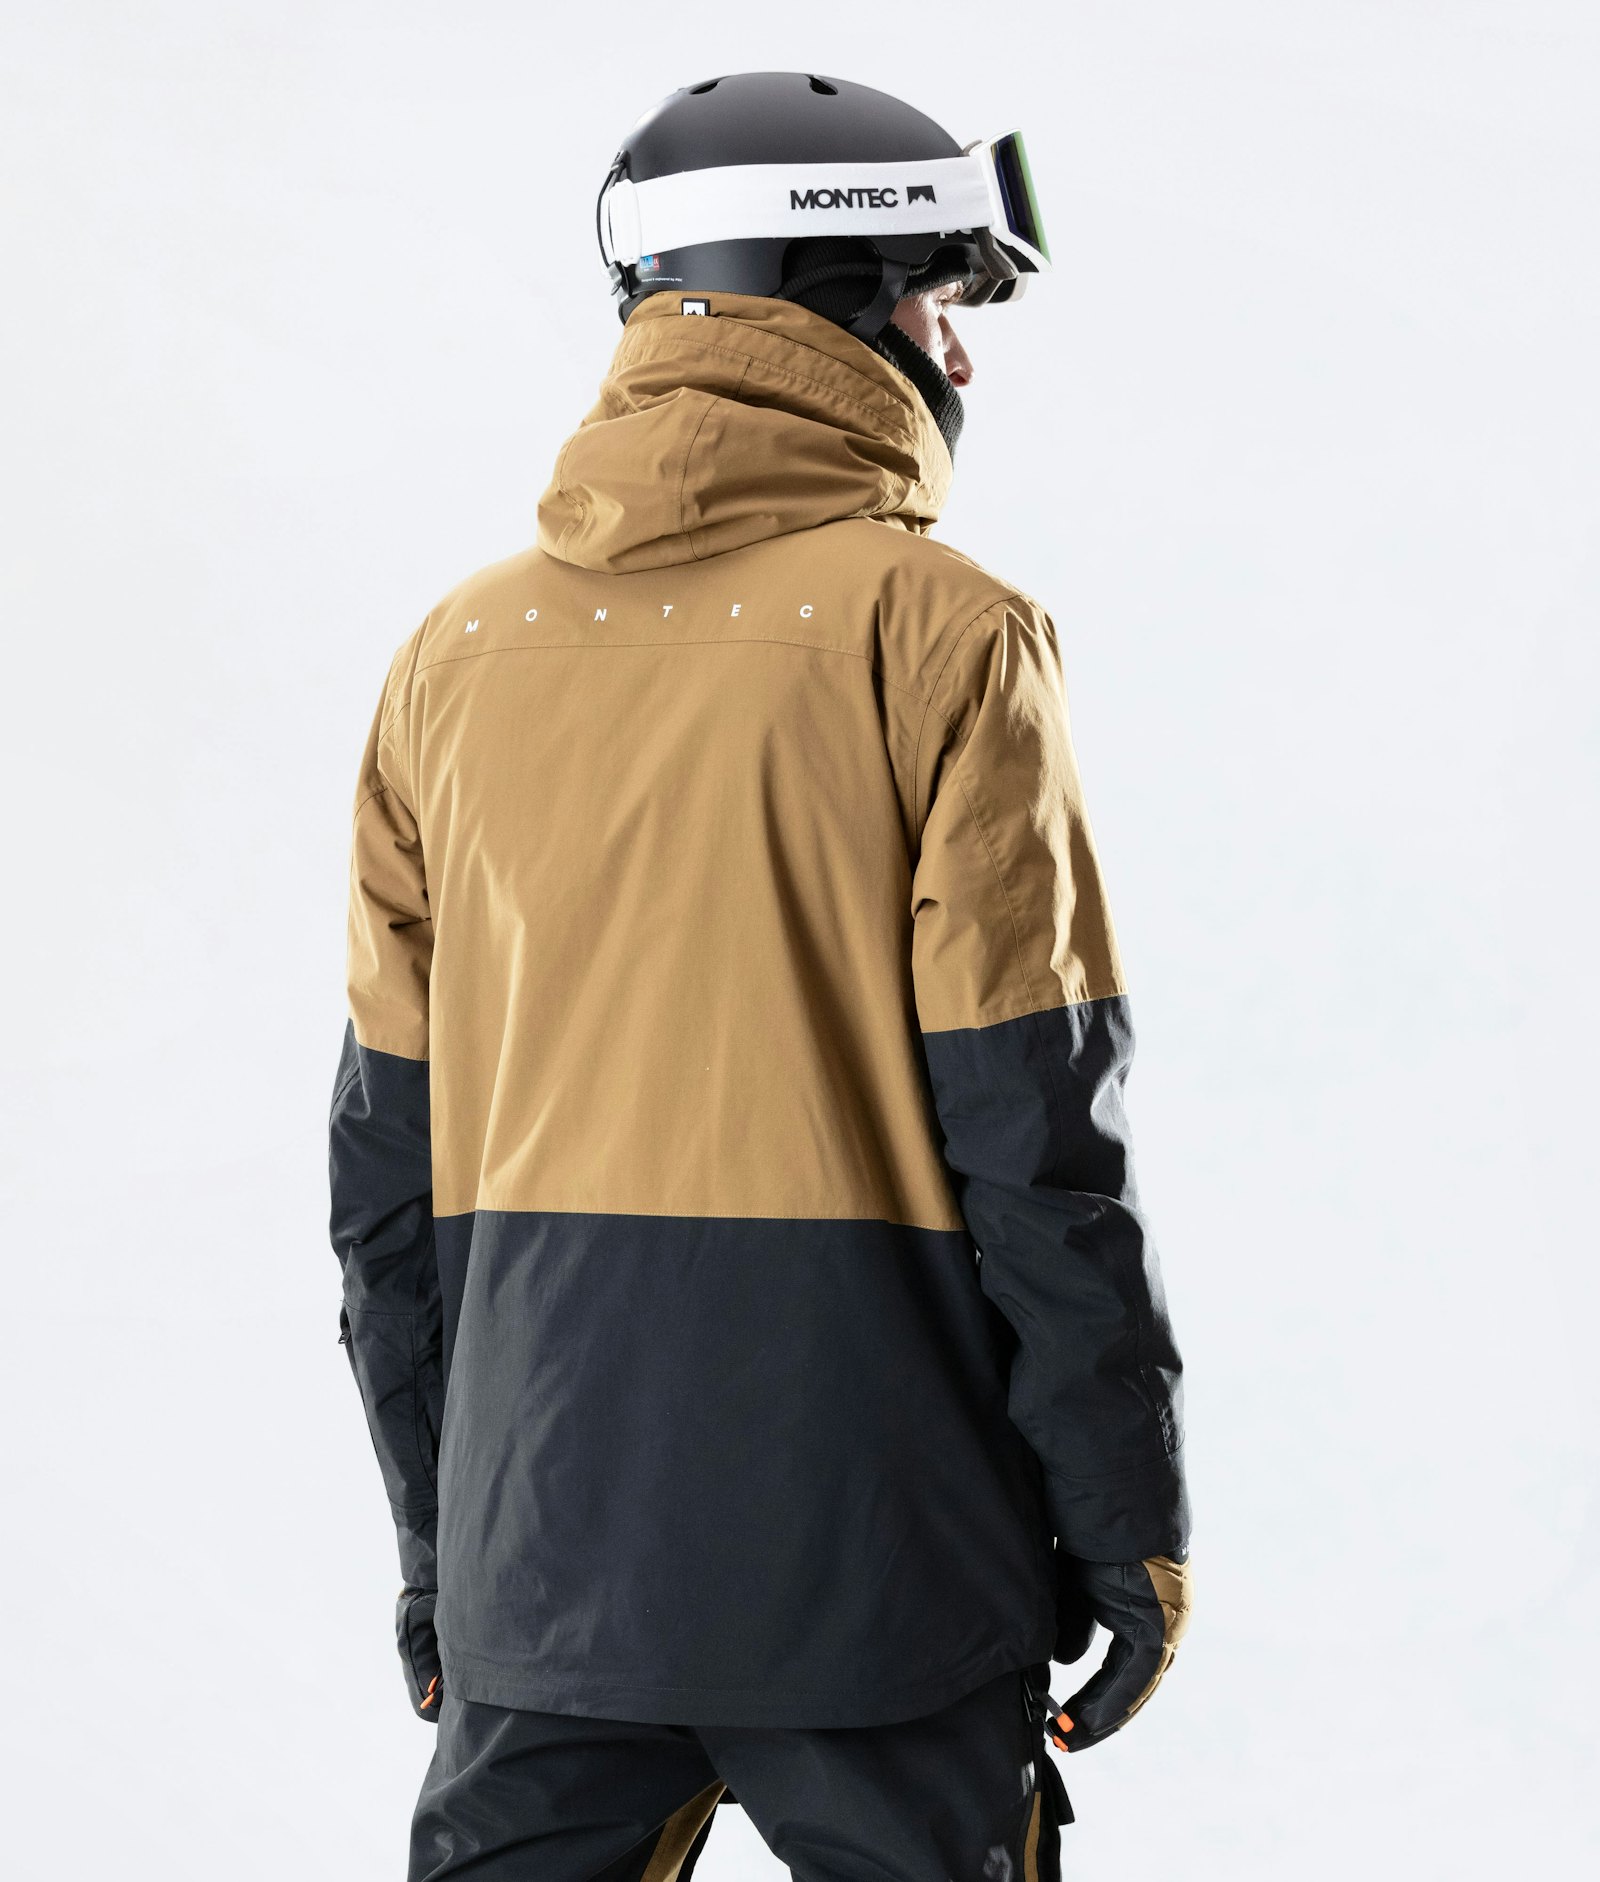 Fawk 2020 Veste de Ski Homme Gold/Black